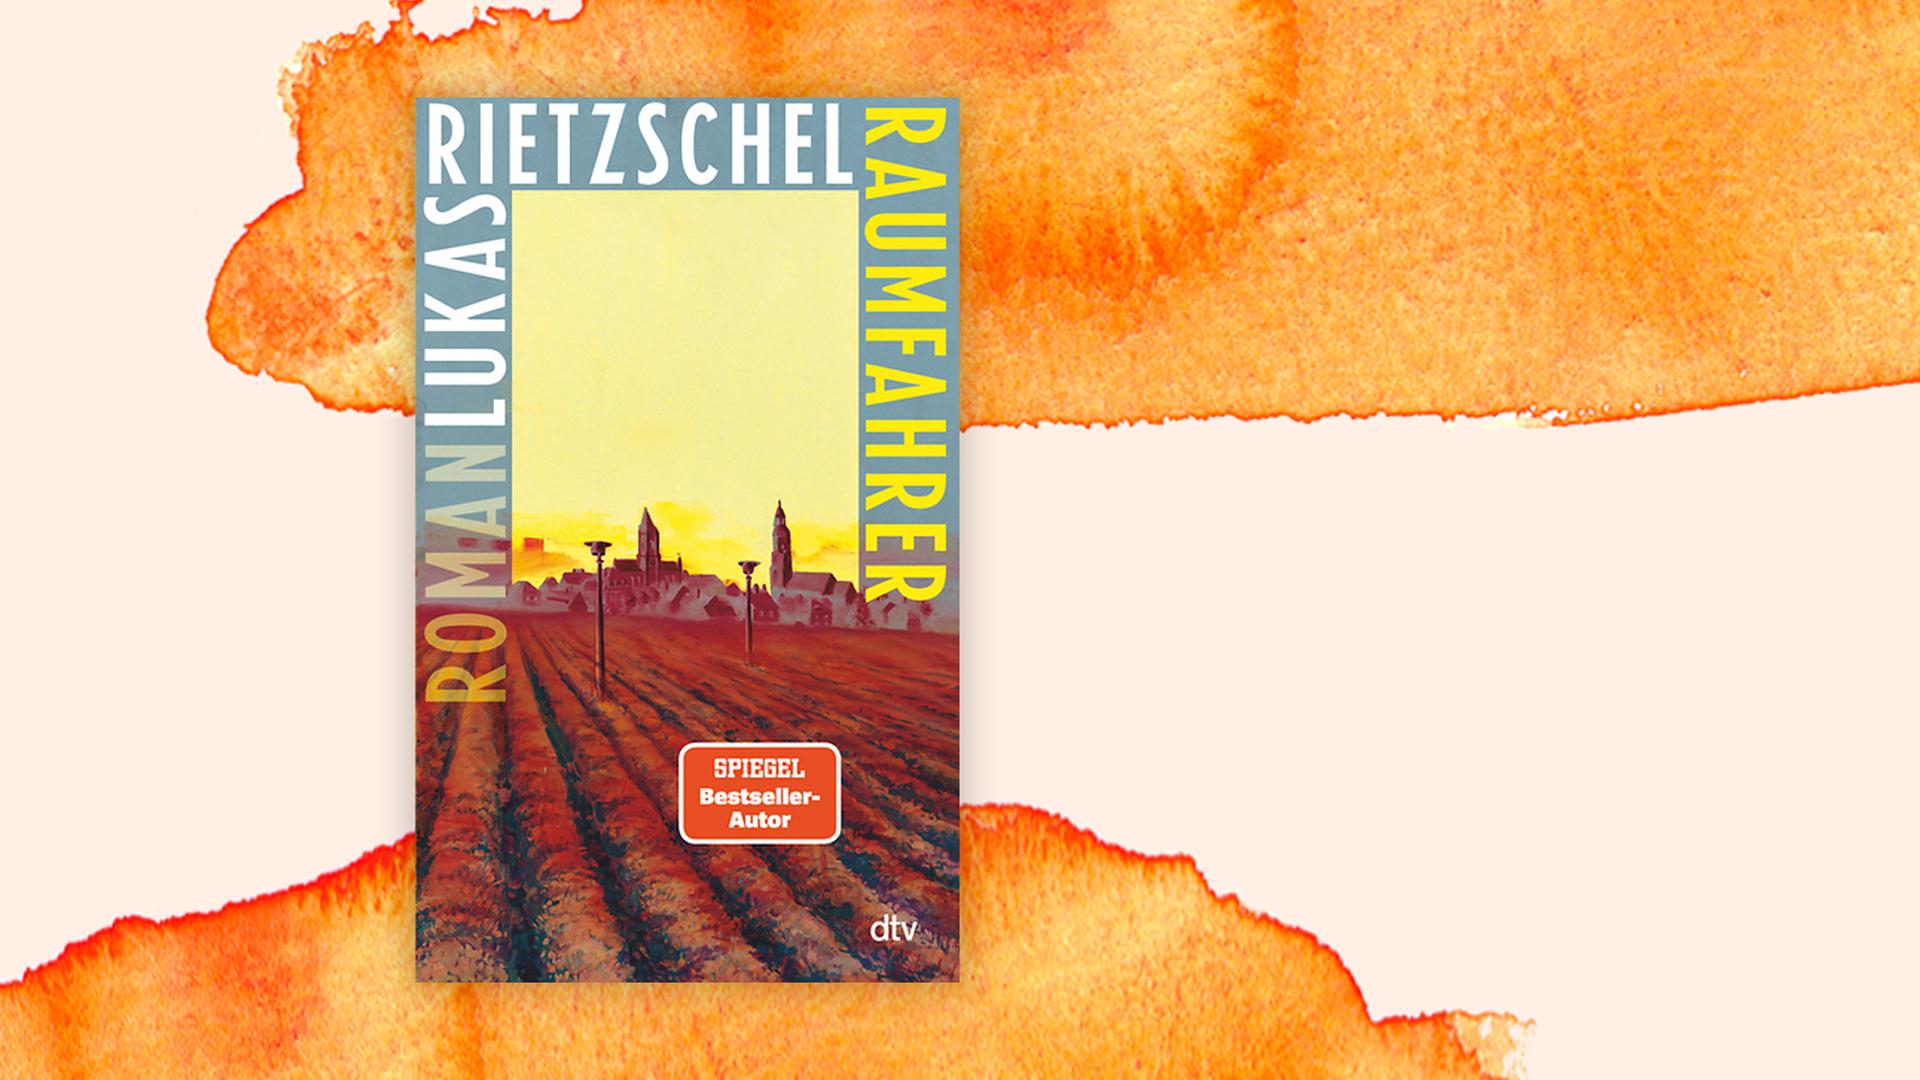 Cover "Raumfahrer" von Lukas Rietzschel auf orangenem Hintergrund.